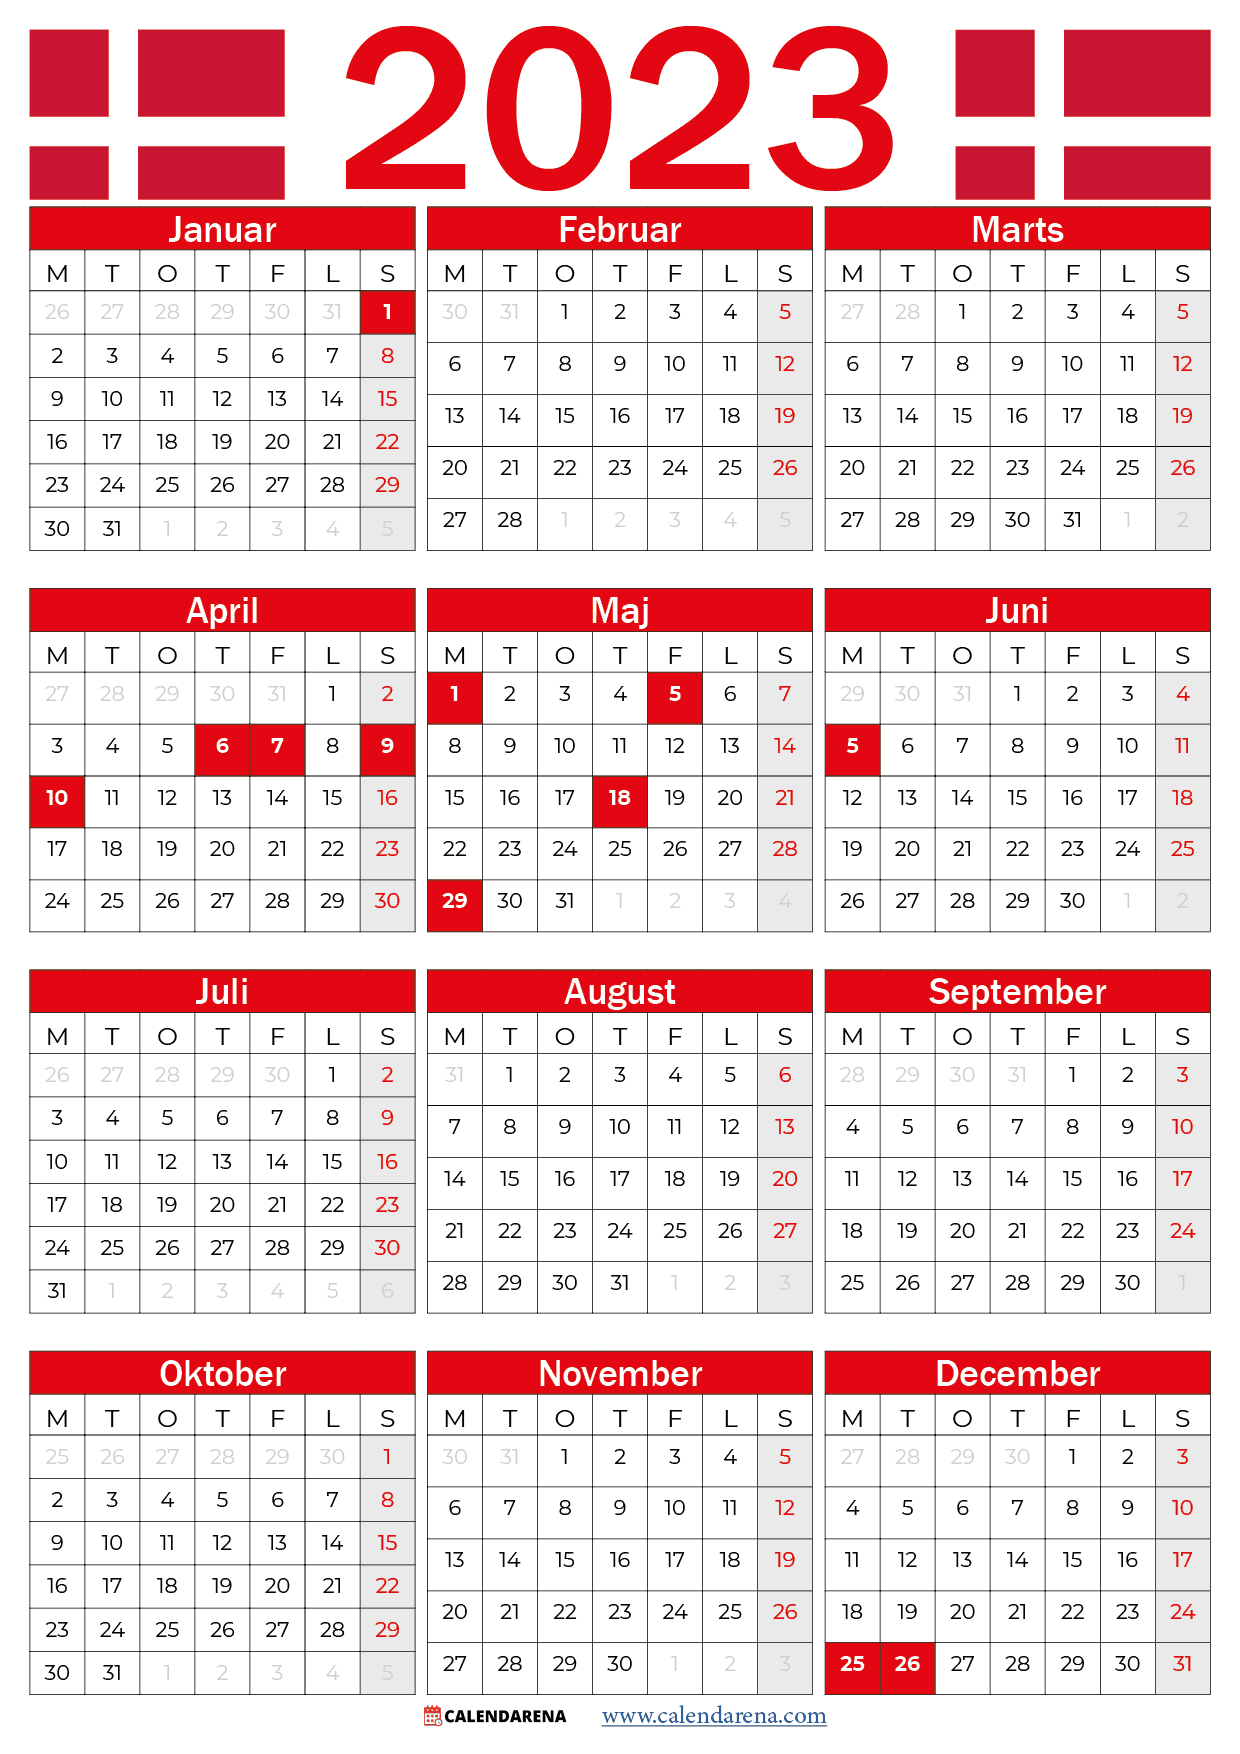 Folkeskole Syge person Distrahere Kalender 2023 Danmark Med Helligdage Og Ugenumre